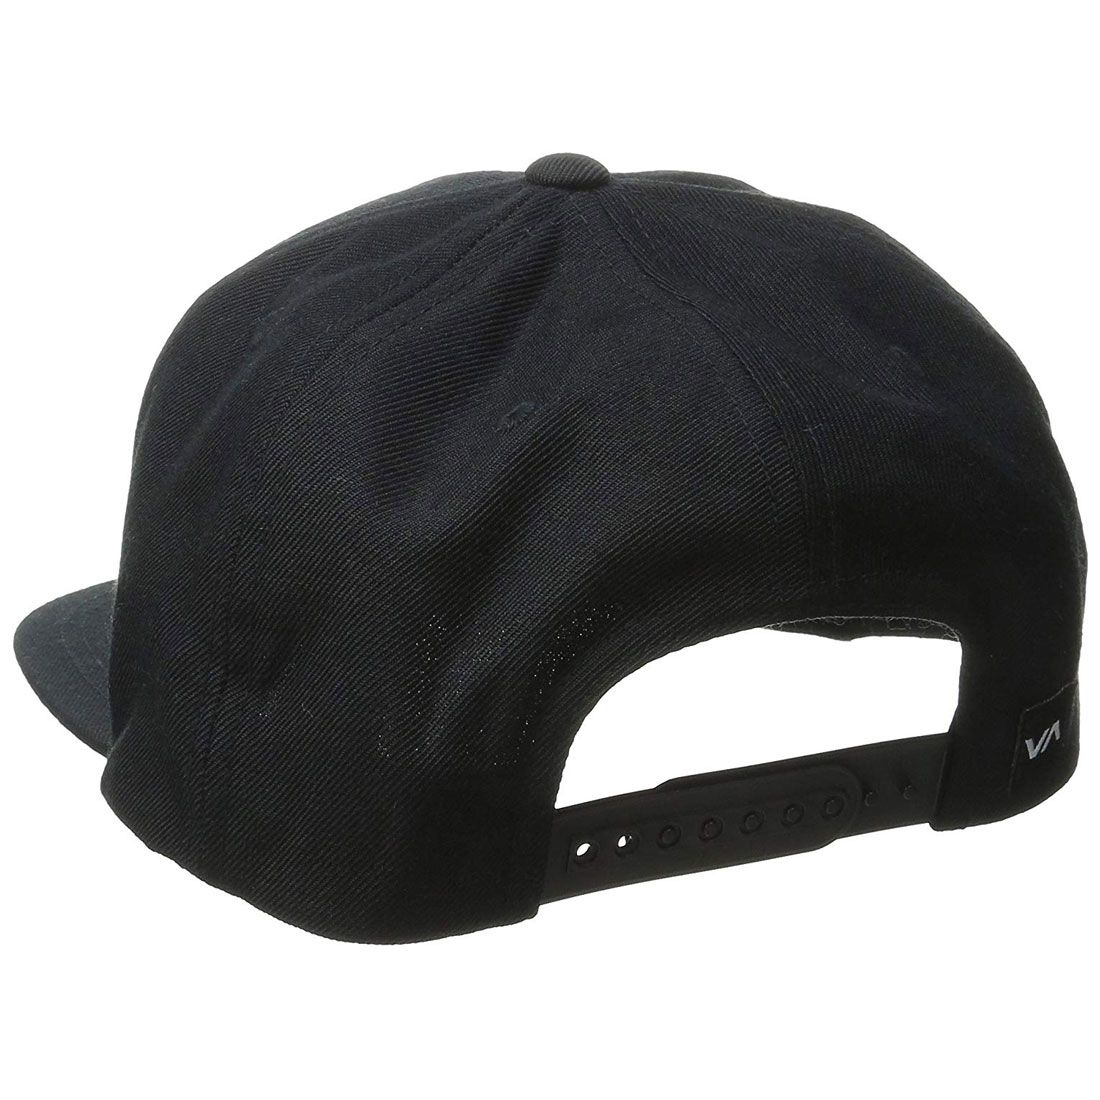 RVCA Commonwealth Snapback Hat Black/White MENS ACCESSORIES - Men's Baseball Hats RVCA 